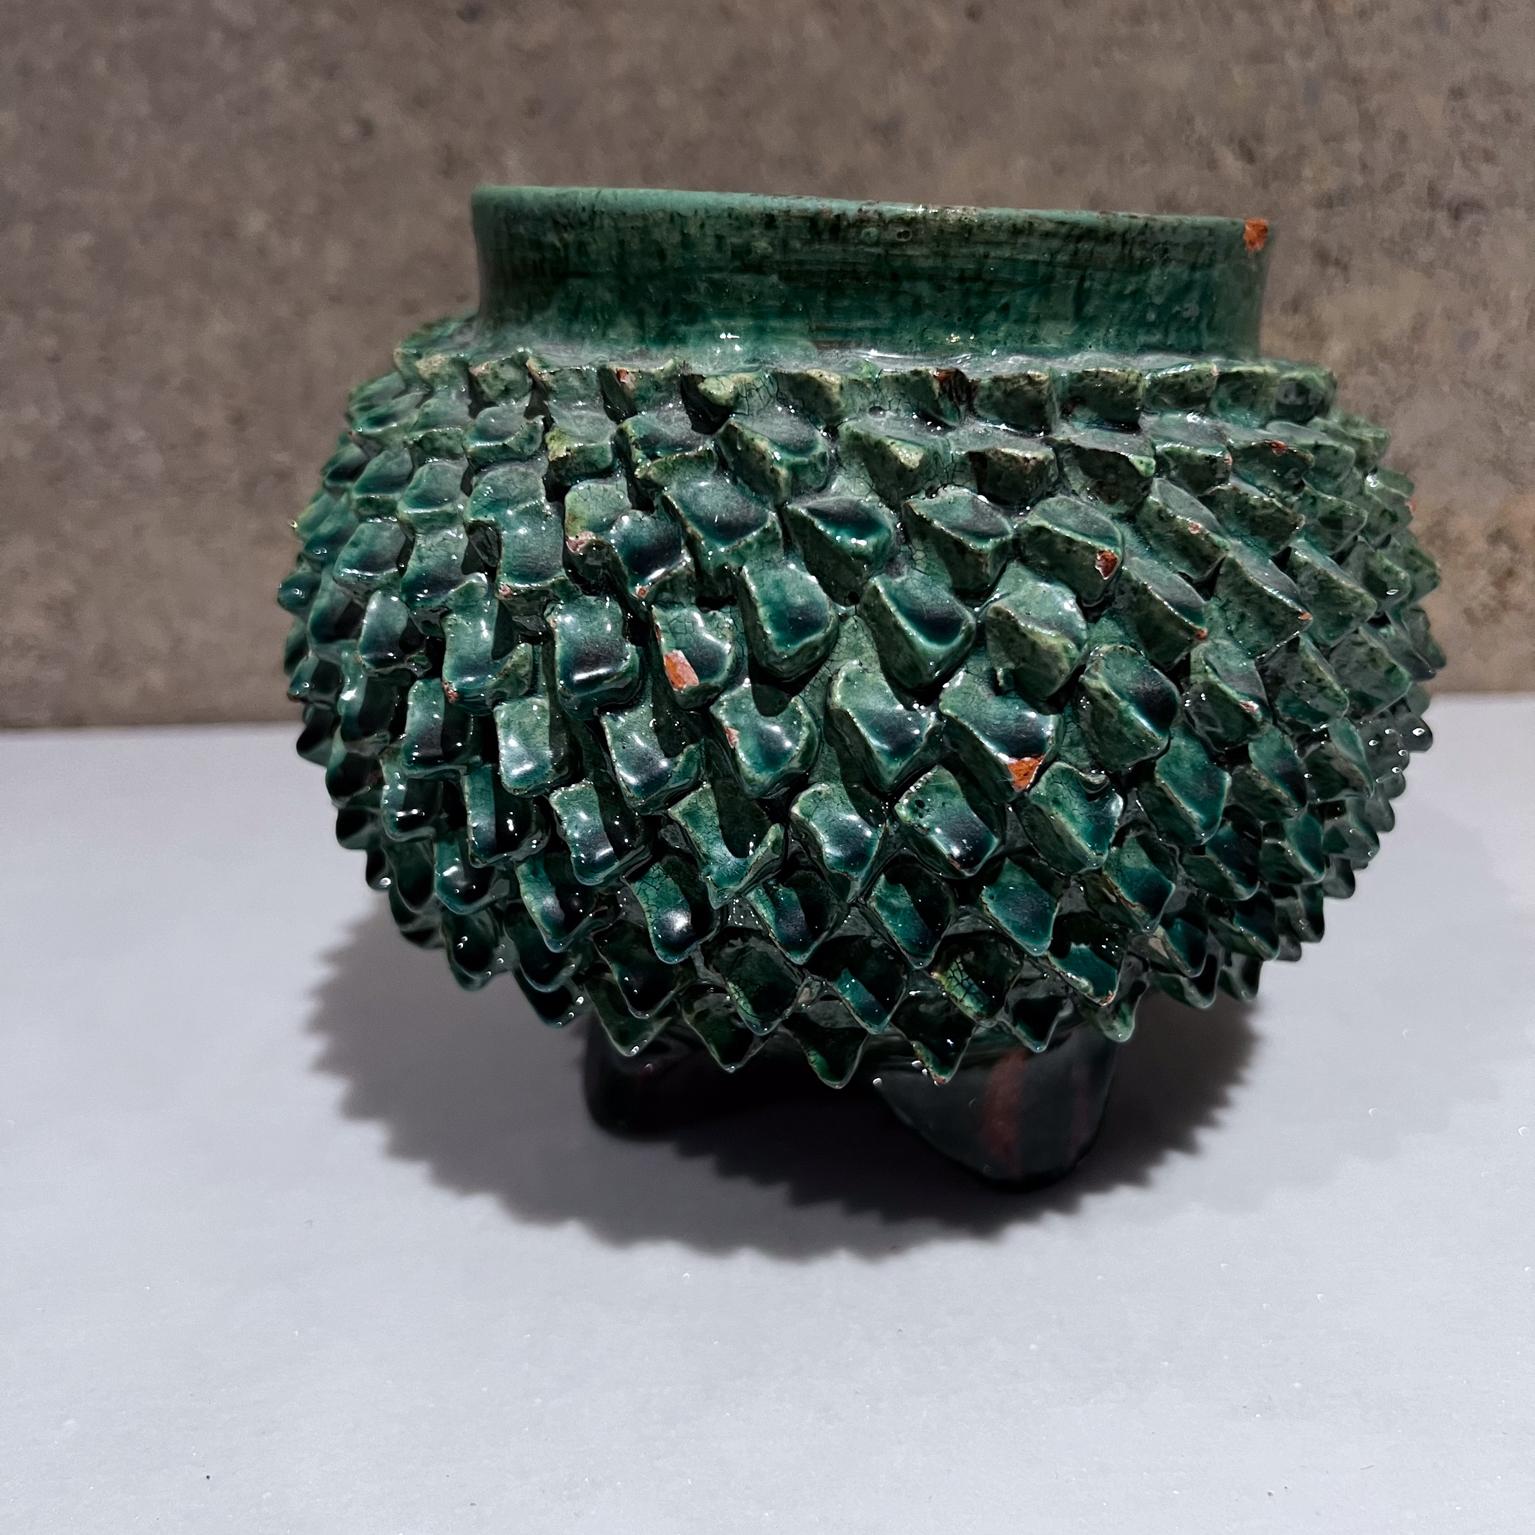 AMBIANIC présente
1970 Art Pottery Green Pineapple Decorative Bowl (bol décoratif en forme d'ananas vert) 
Piña Ceramics Michoacán Mexique
5,25 h x 6,5 diamètre
Etat original non restauré.
Voir toutes les images présentées.